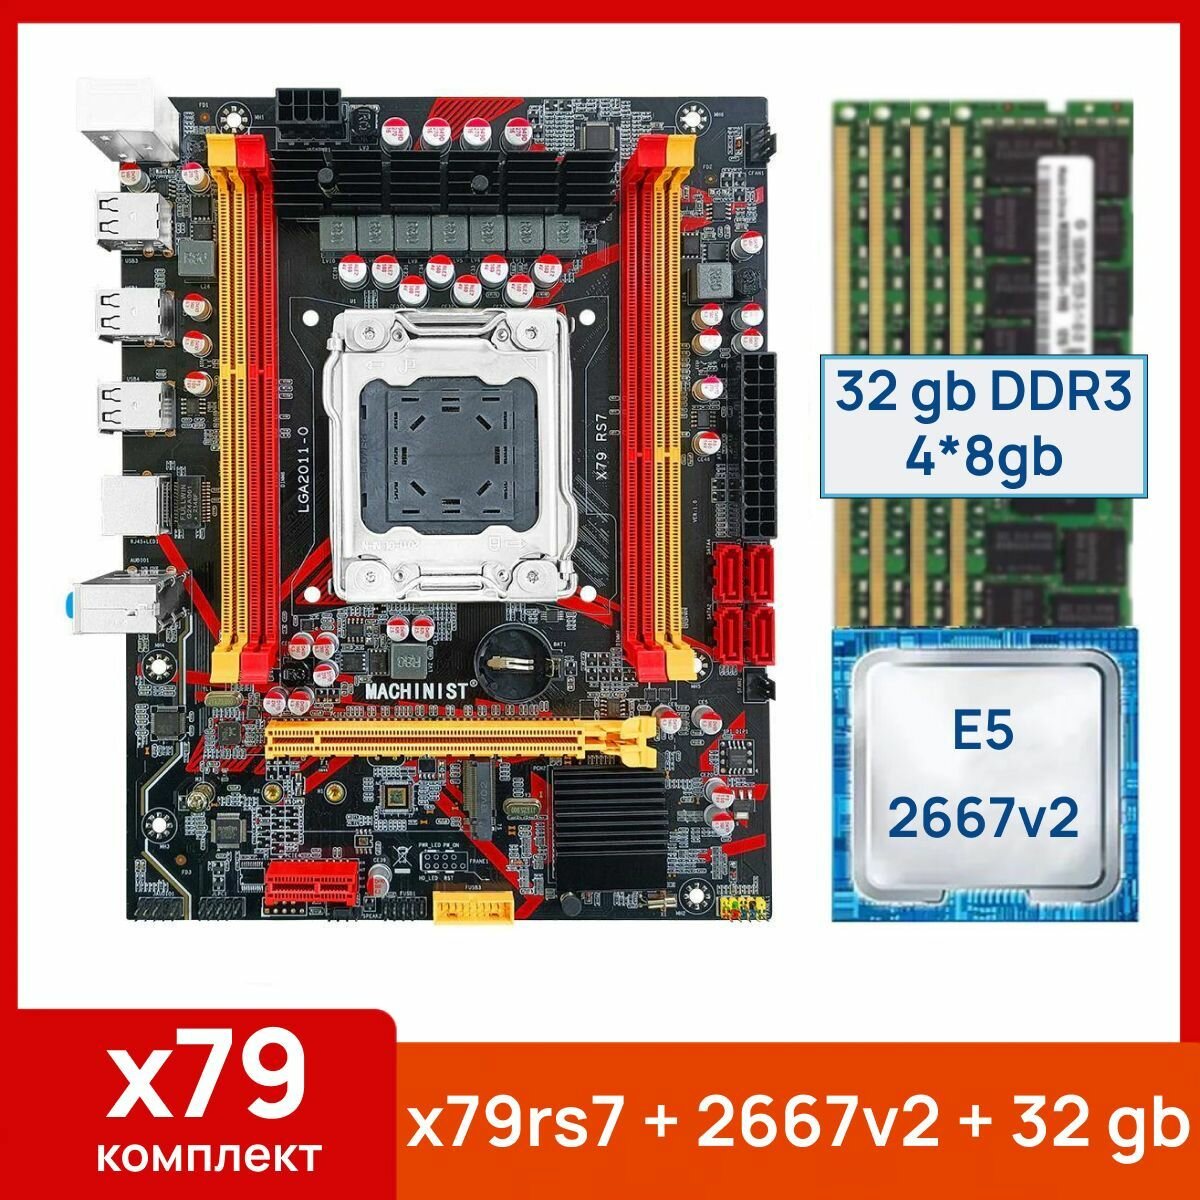 Комплект: Материнская плата Machinist RS-7 + Процессор Xeon E5 2667v2 + 32 gb(4x8gb) DDR3 серверная